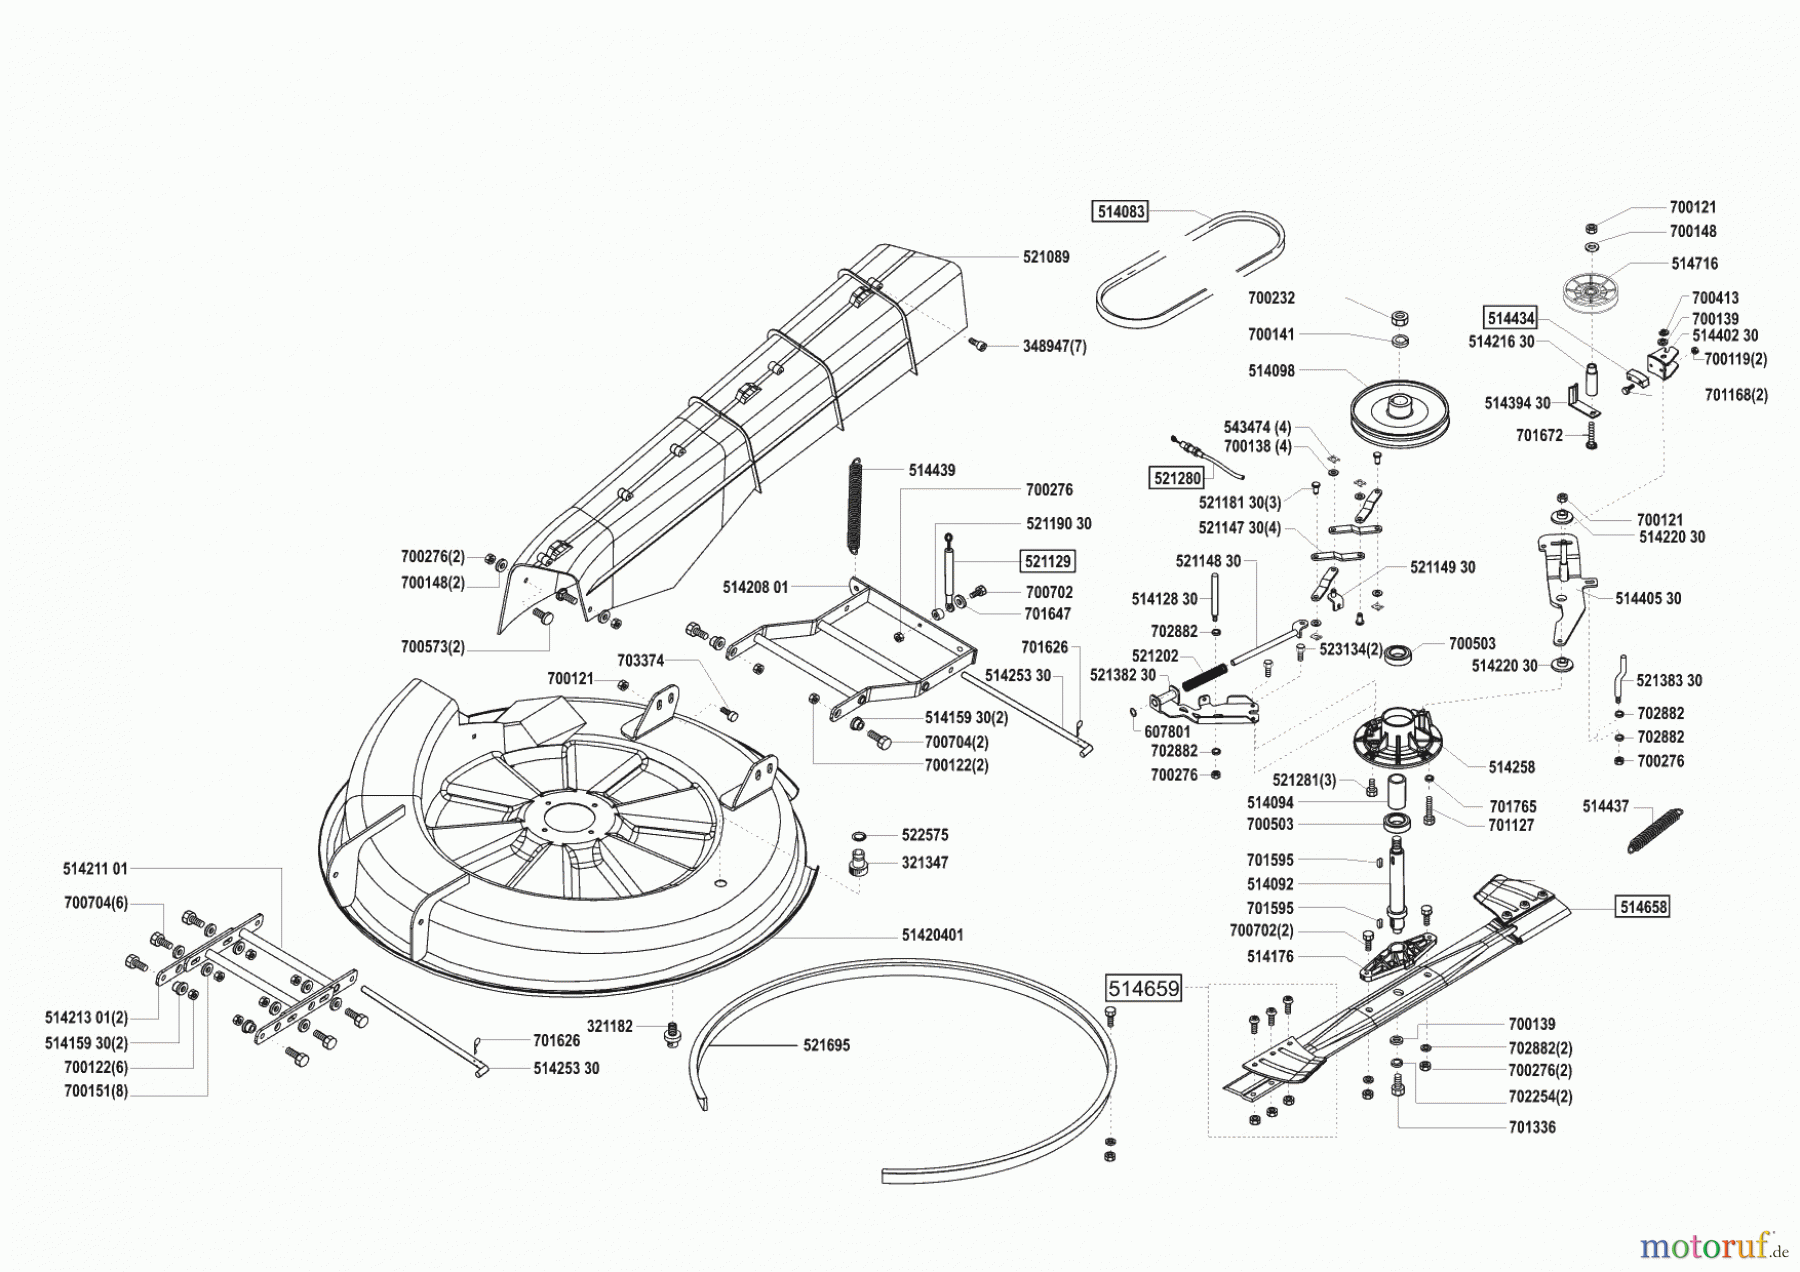  Concord Gartentechnik Rasentraktor T14-85 vor 06/2002 Seite 5